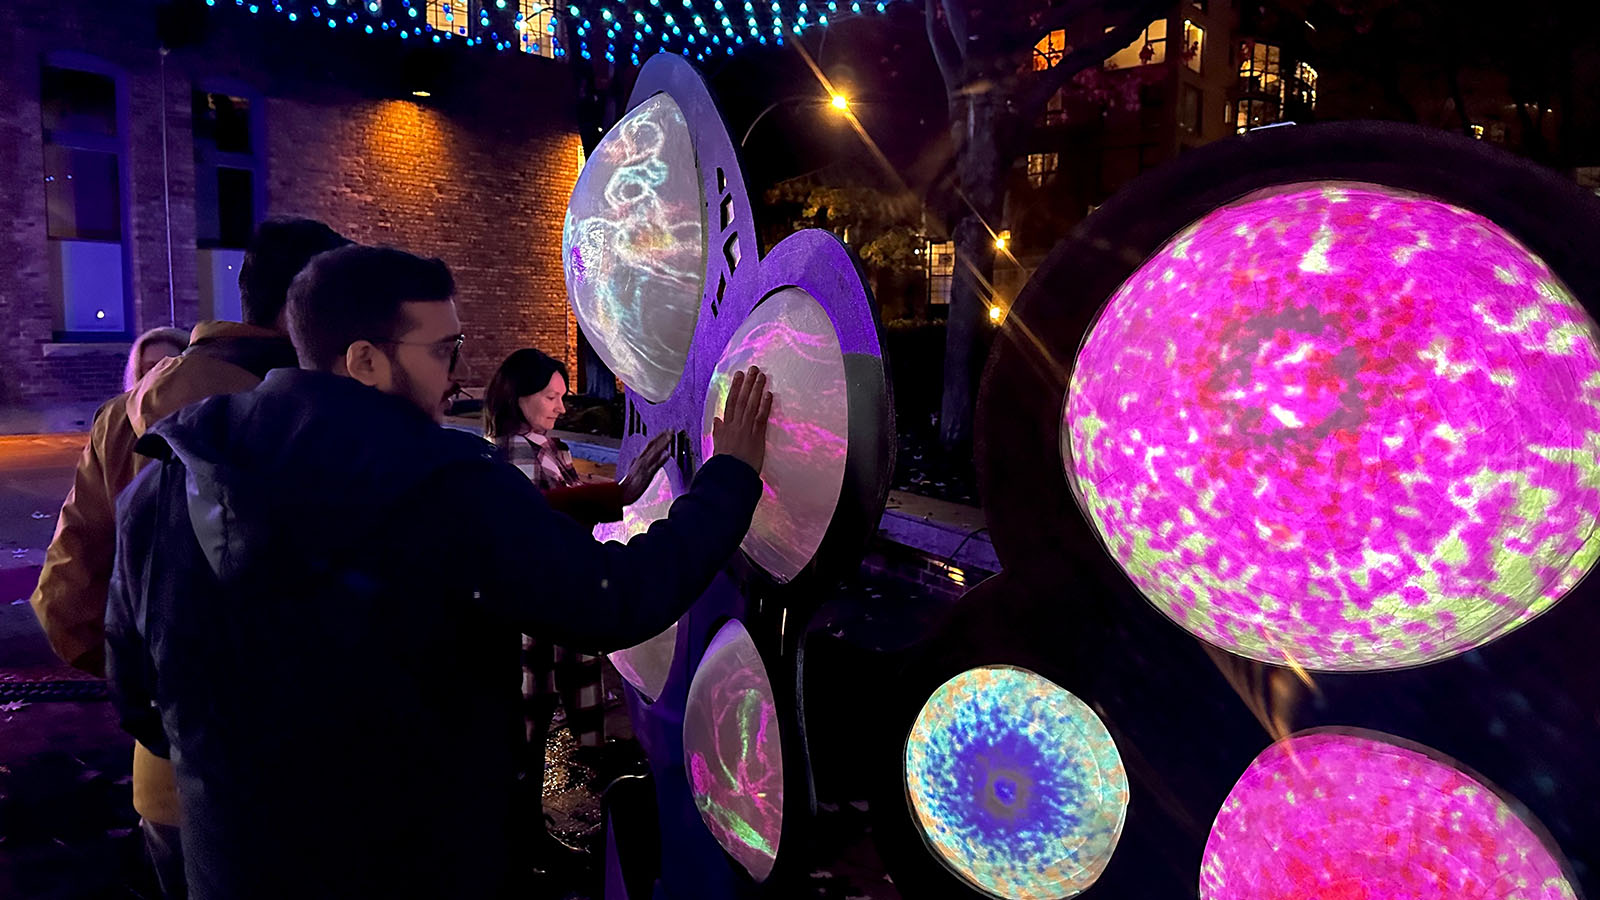 interactive light art featuring globes